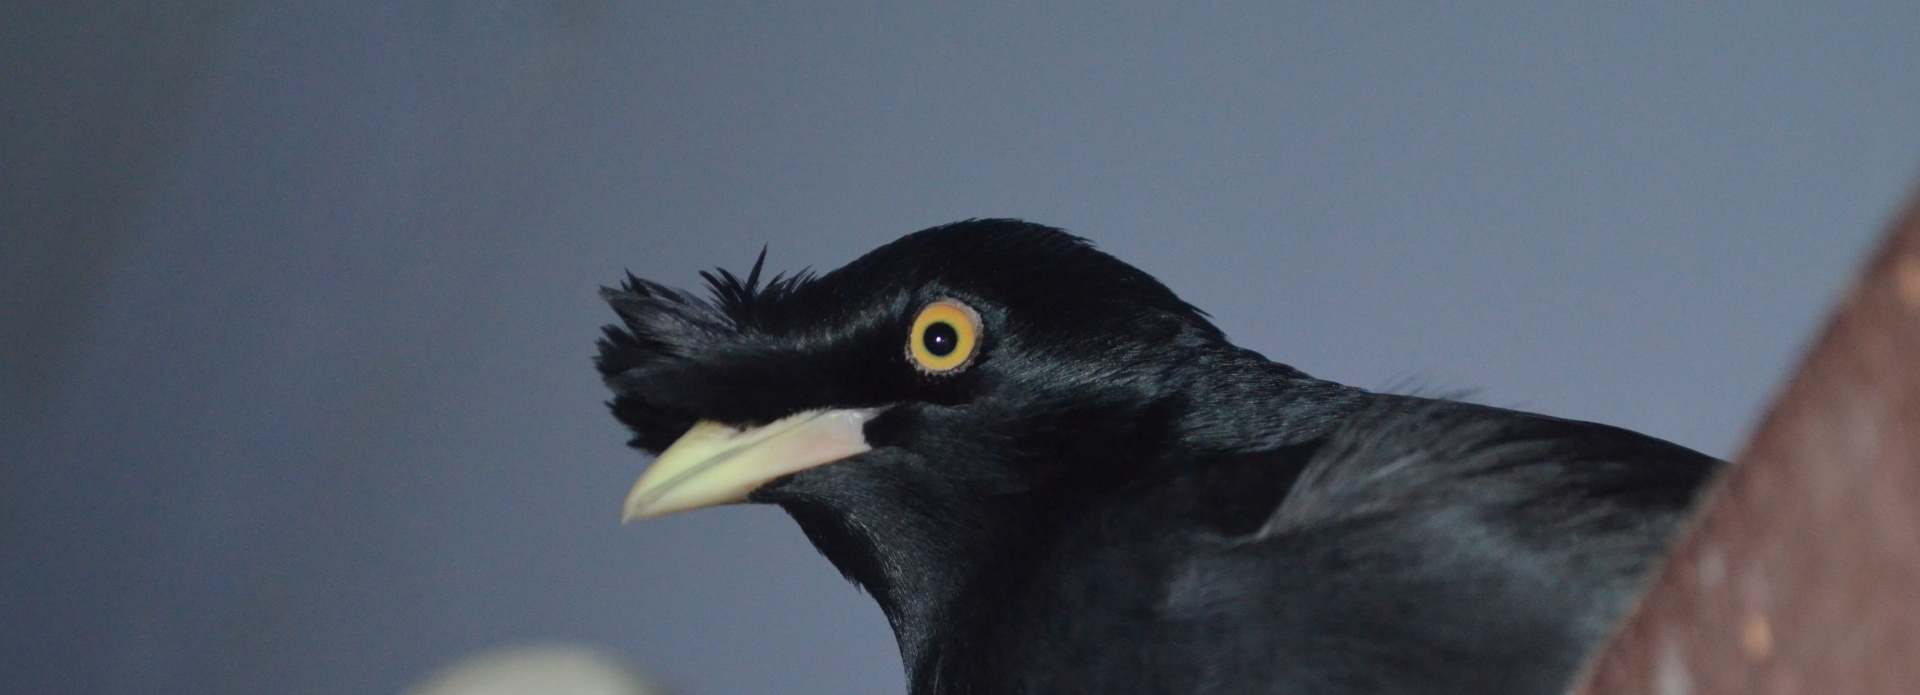 crested black myna bird